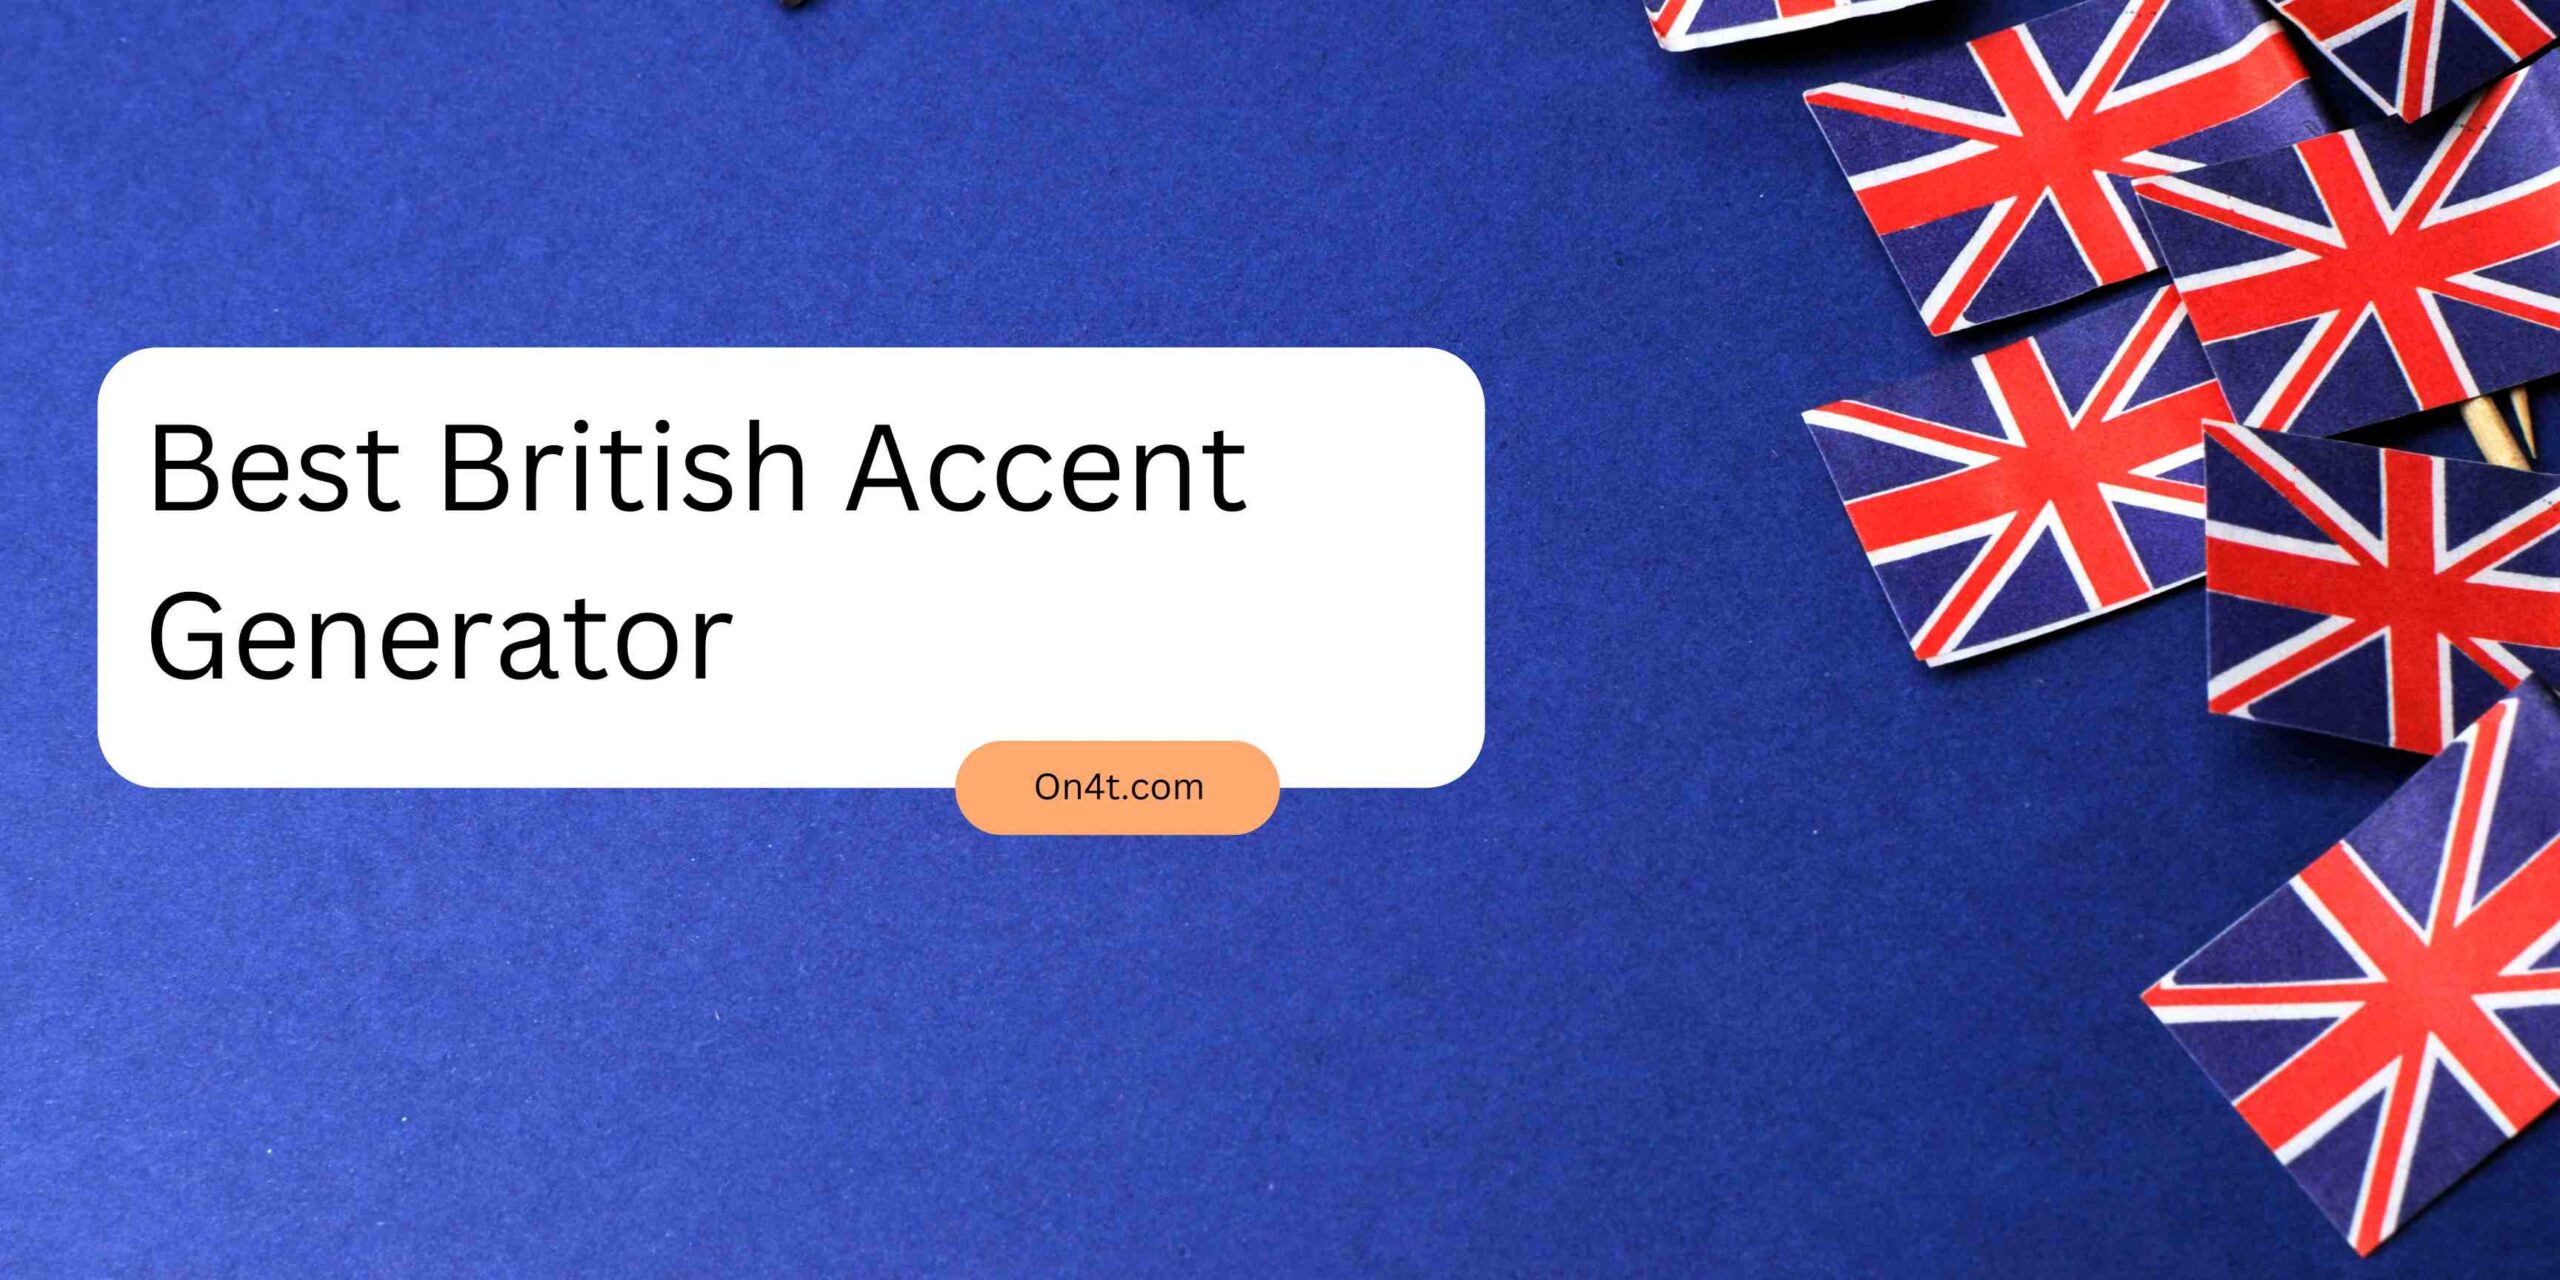 Best British Accent Generator